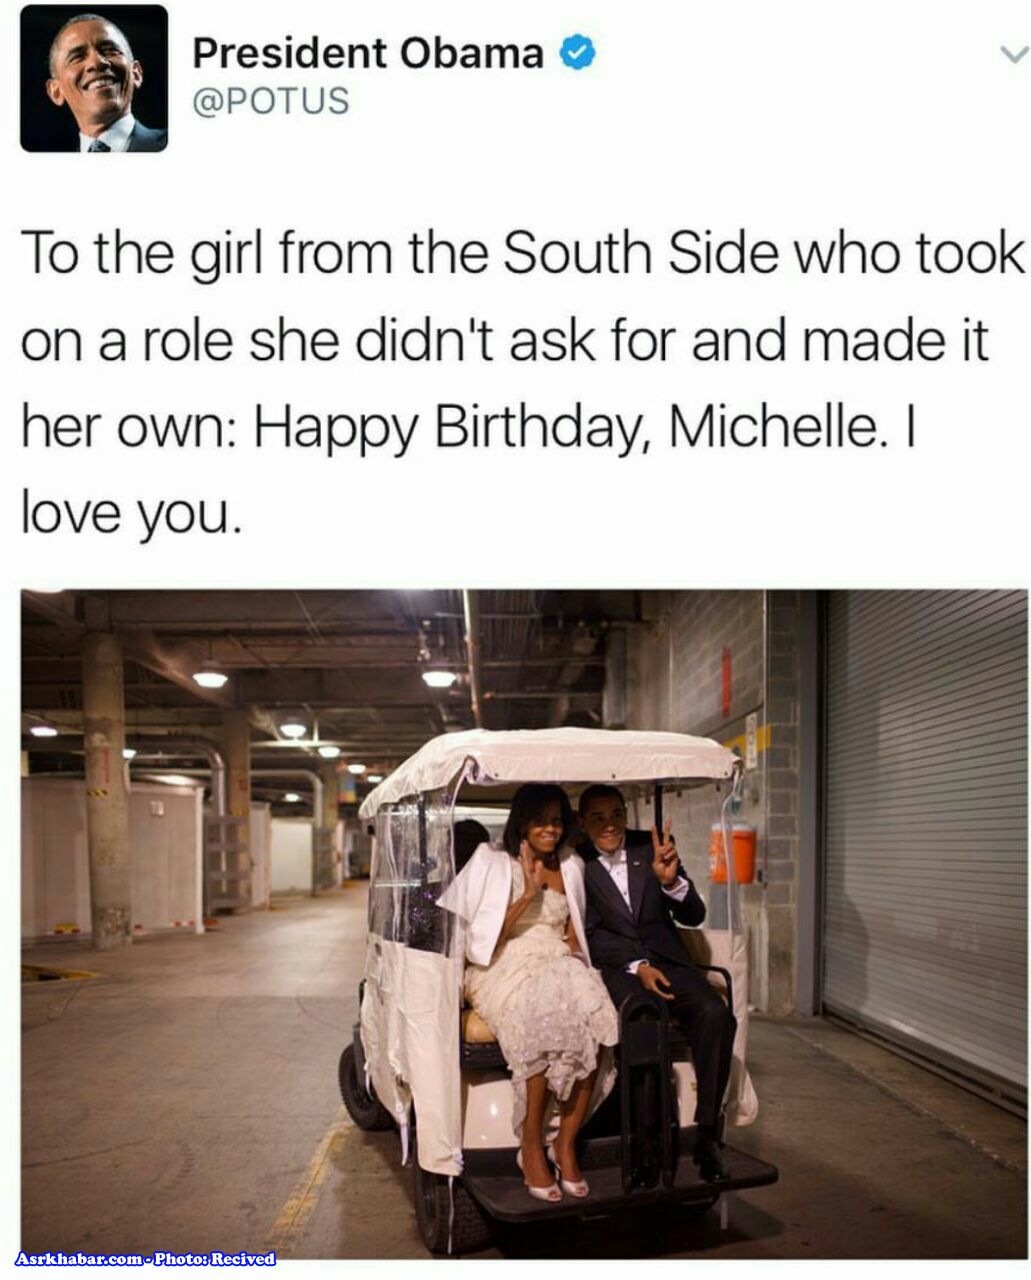 دل نوشته اوباما براي تولد همسرش (عكس)